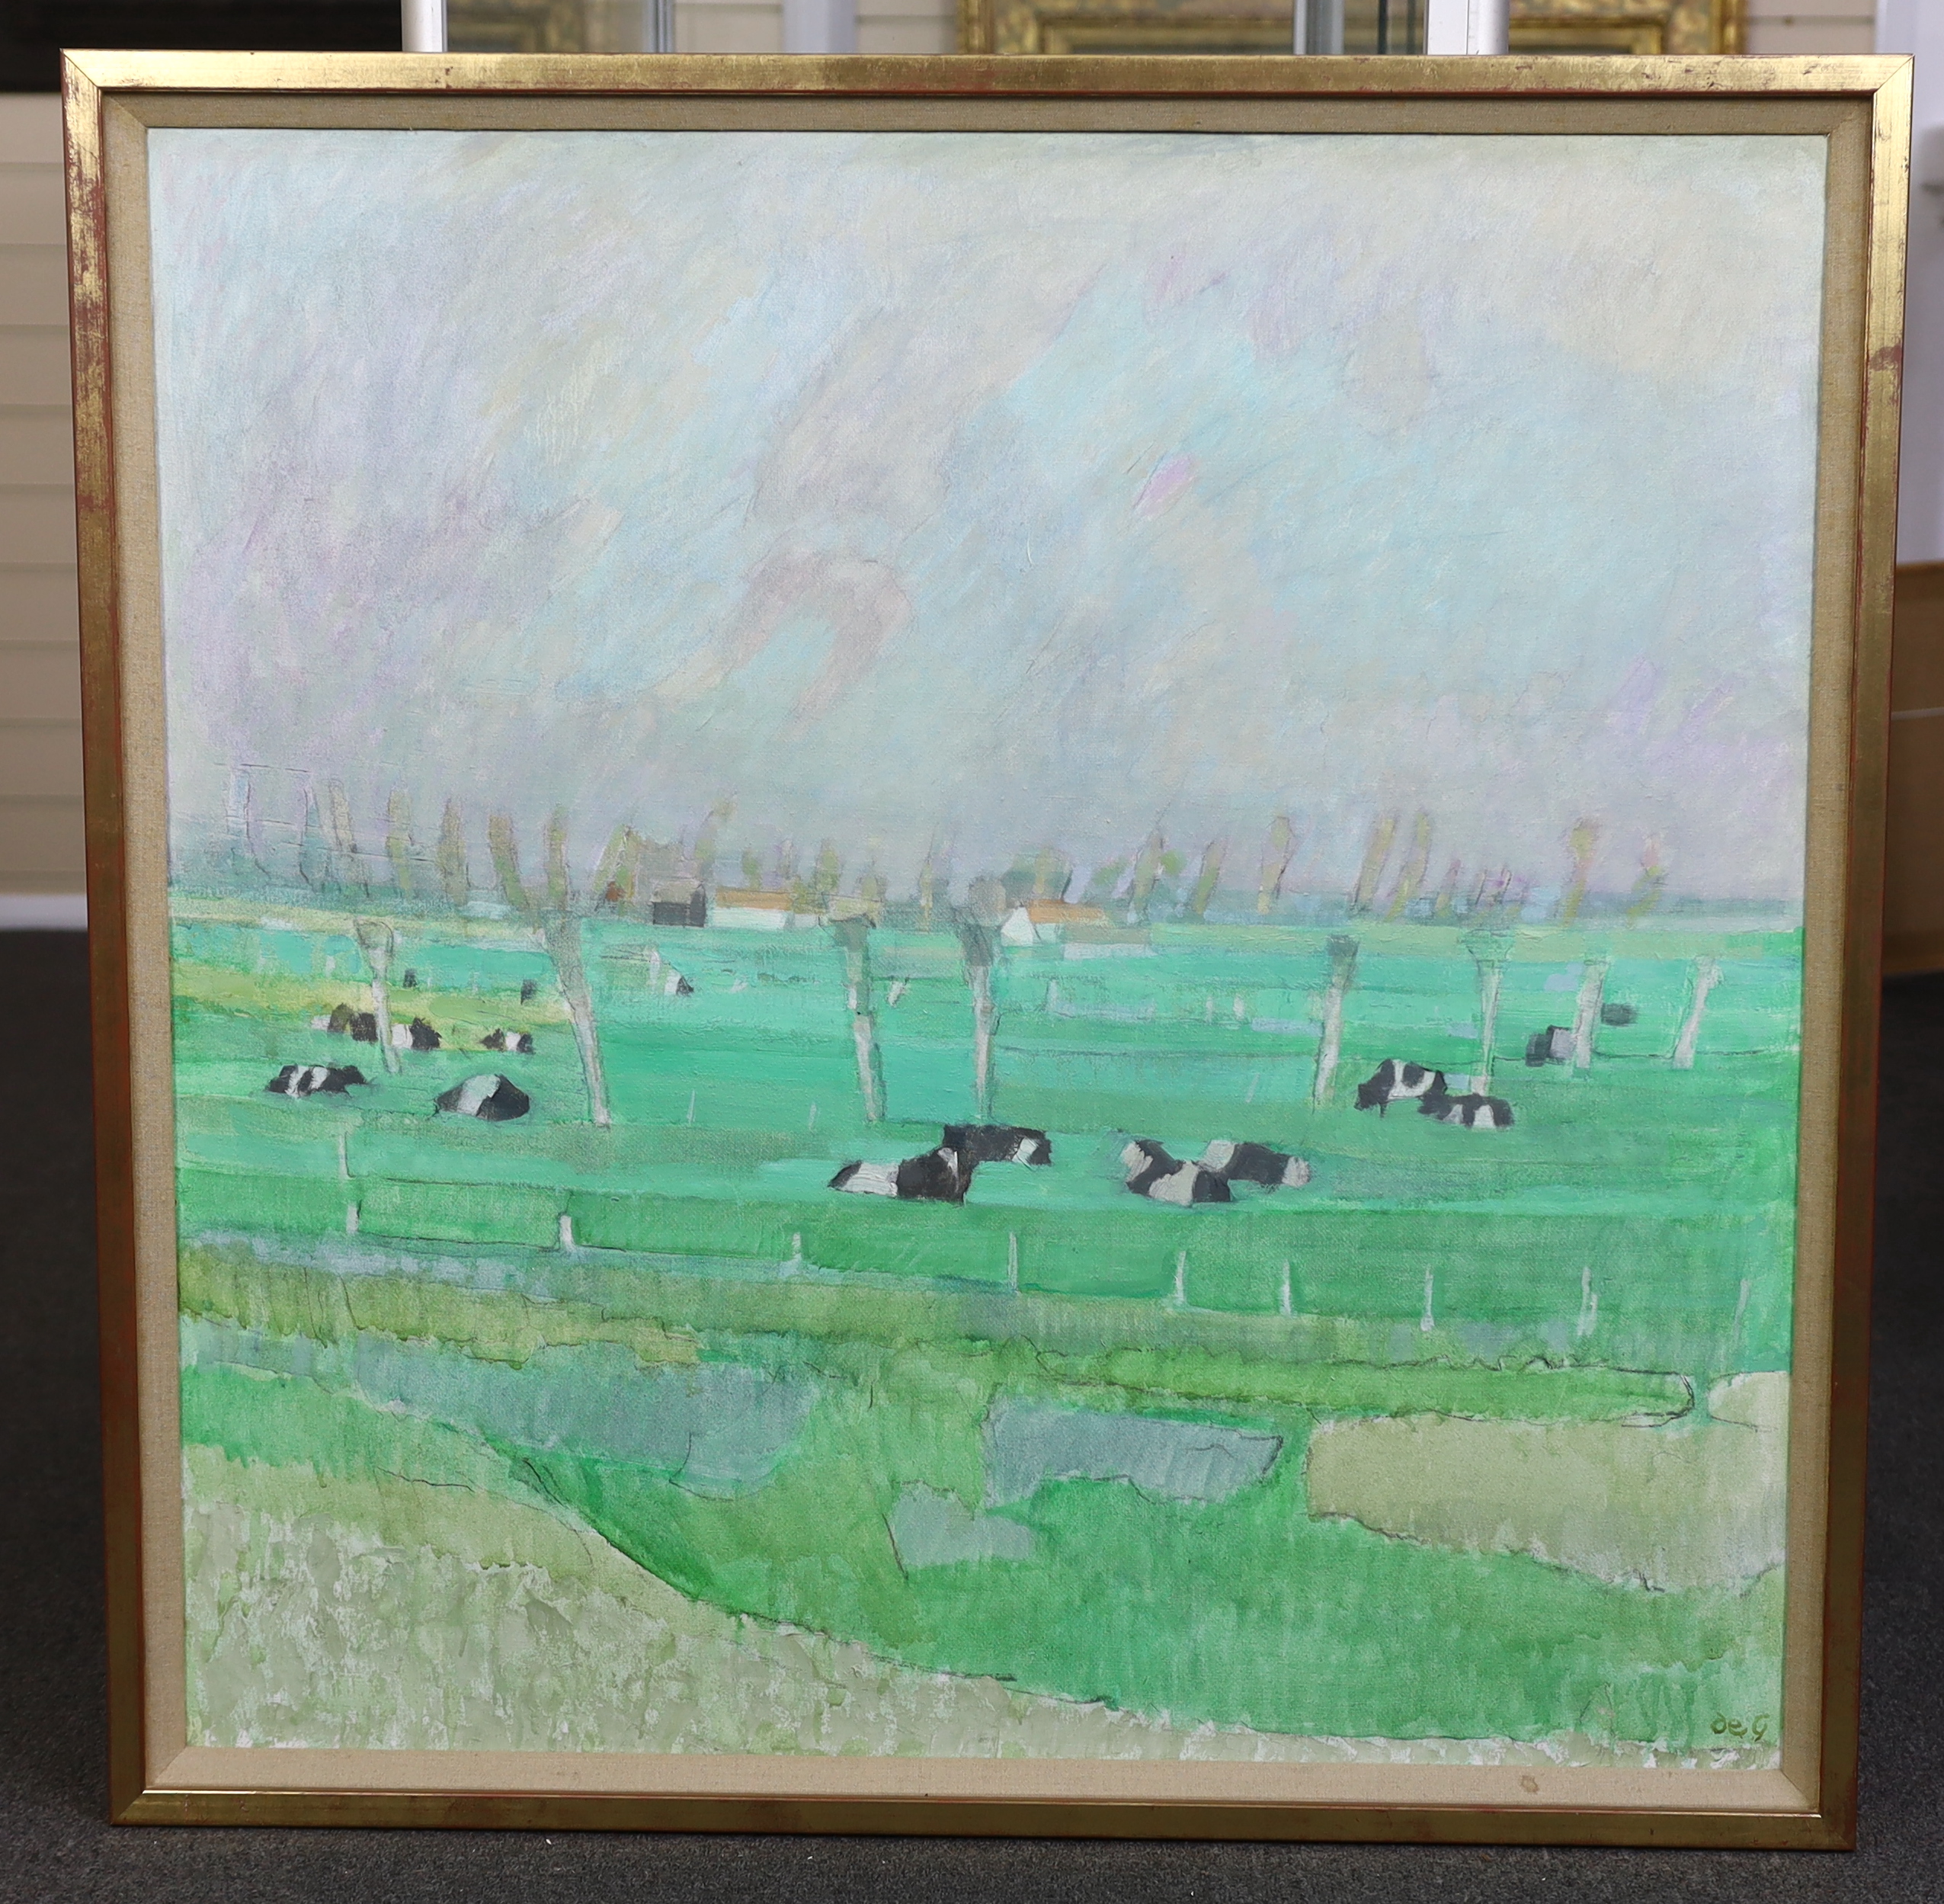 Sir Roger de Grey, P.R.A. (English, 1918-1995), 'Damme, Belgium', oil on canvas, 91 x 90cm